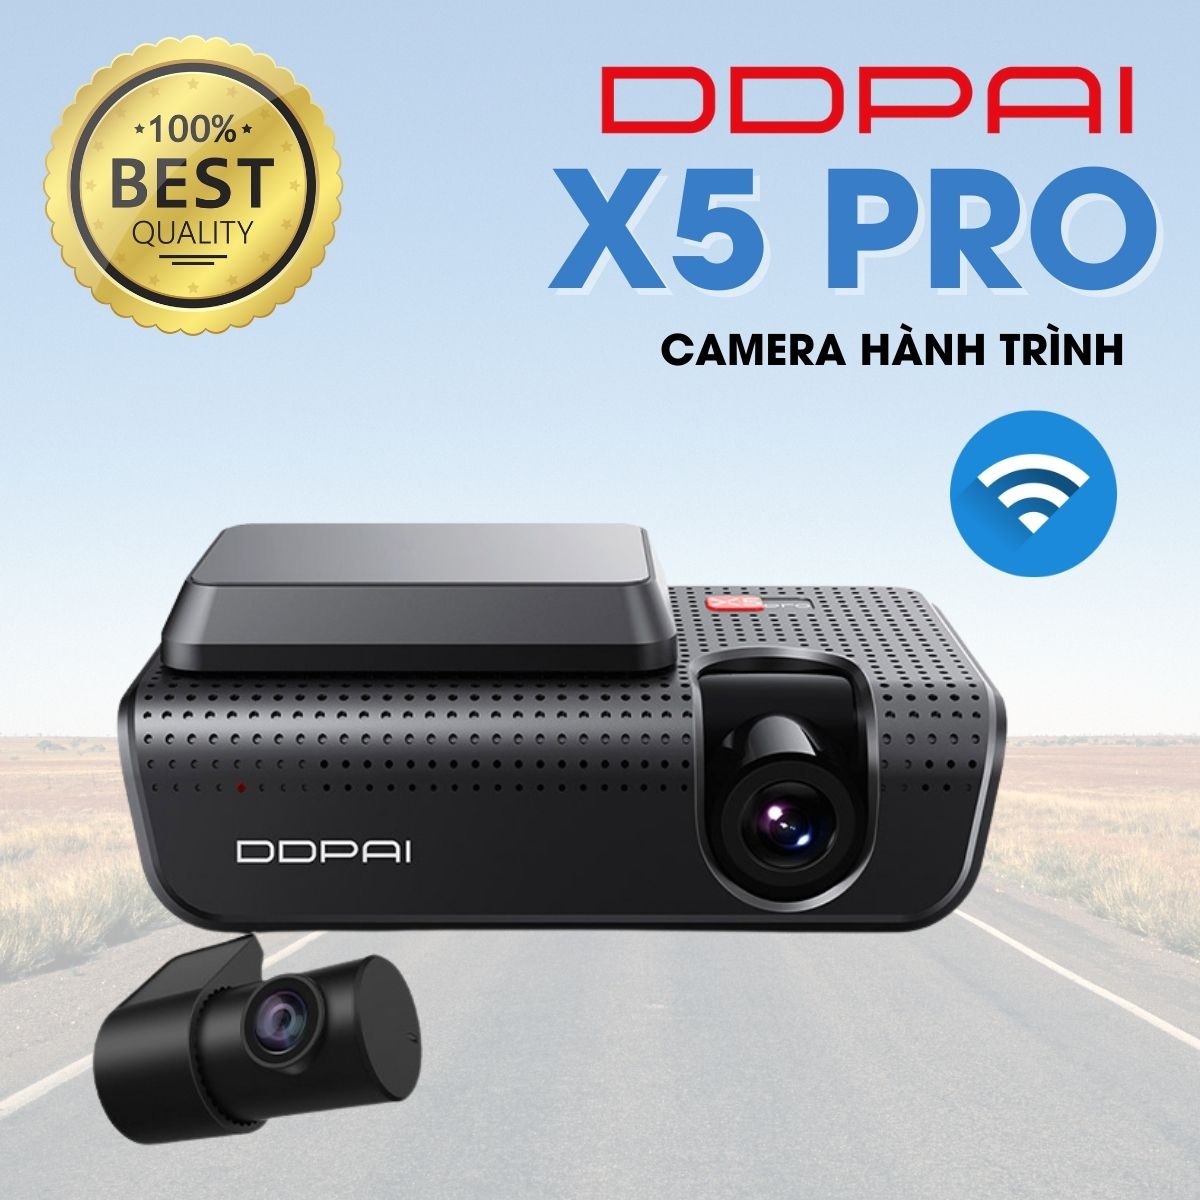 Camera hành trình ô tô DDPai X5 Pro 4K, ghi hình trước sau, Giám sát bãi đậu xe 24h